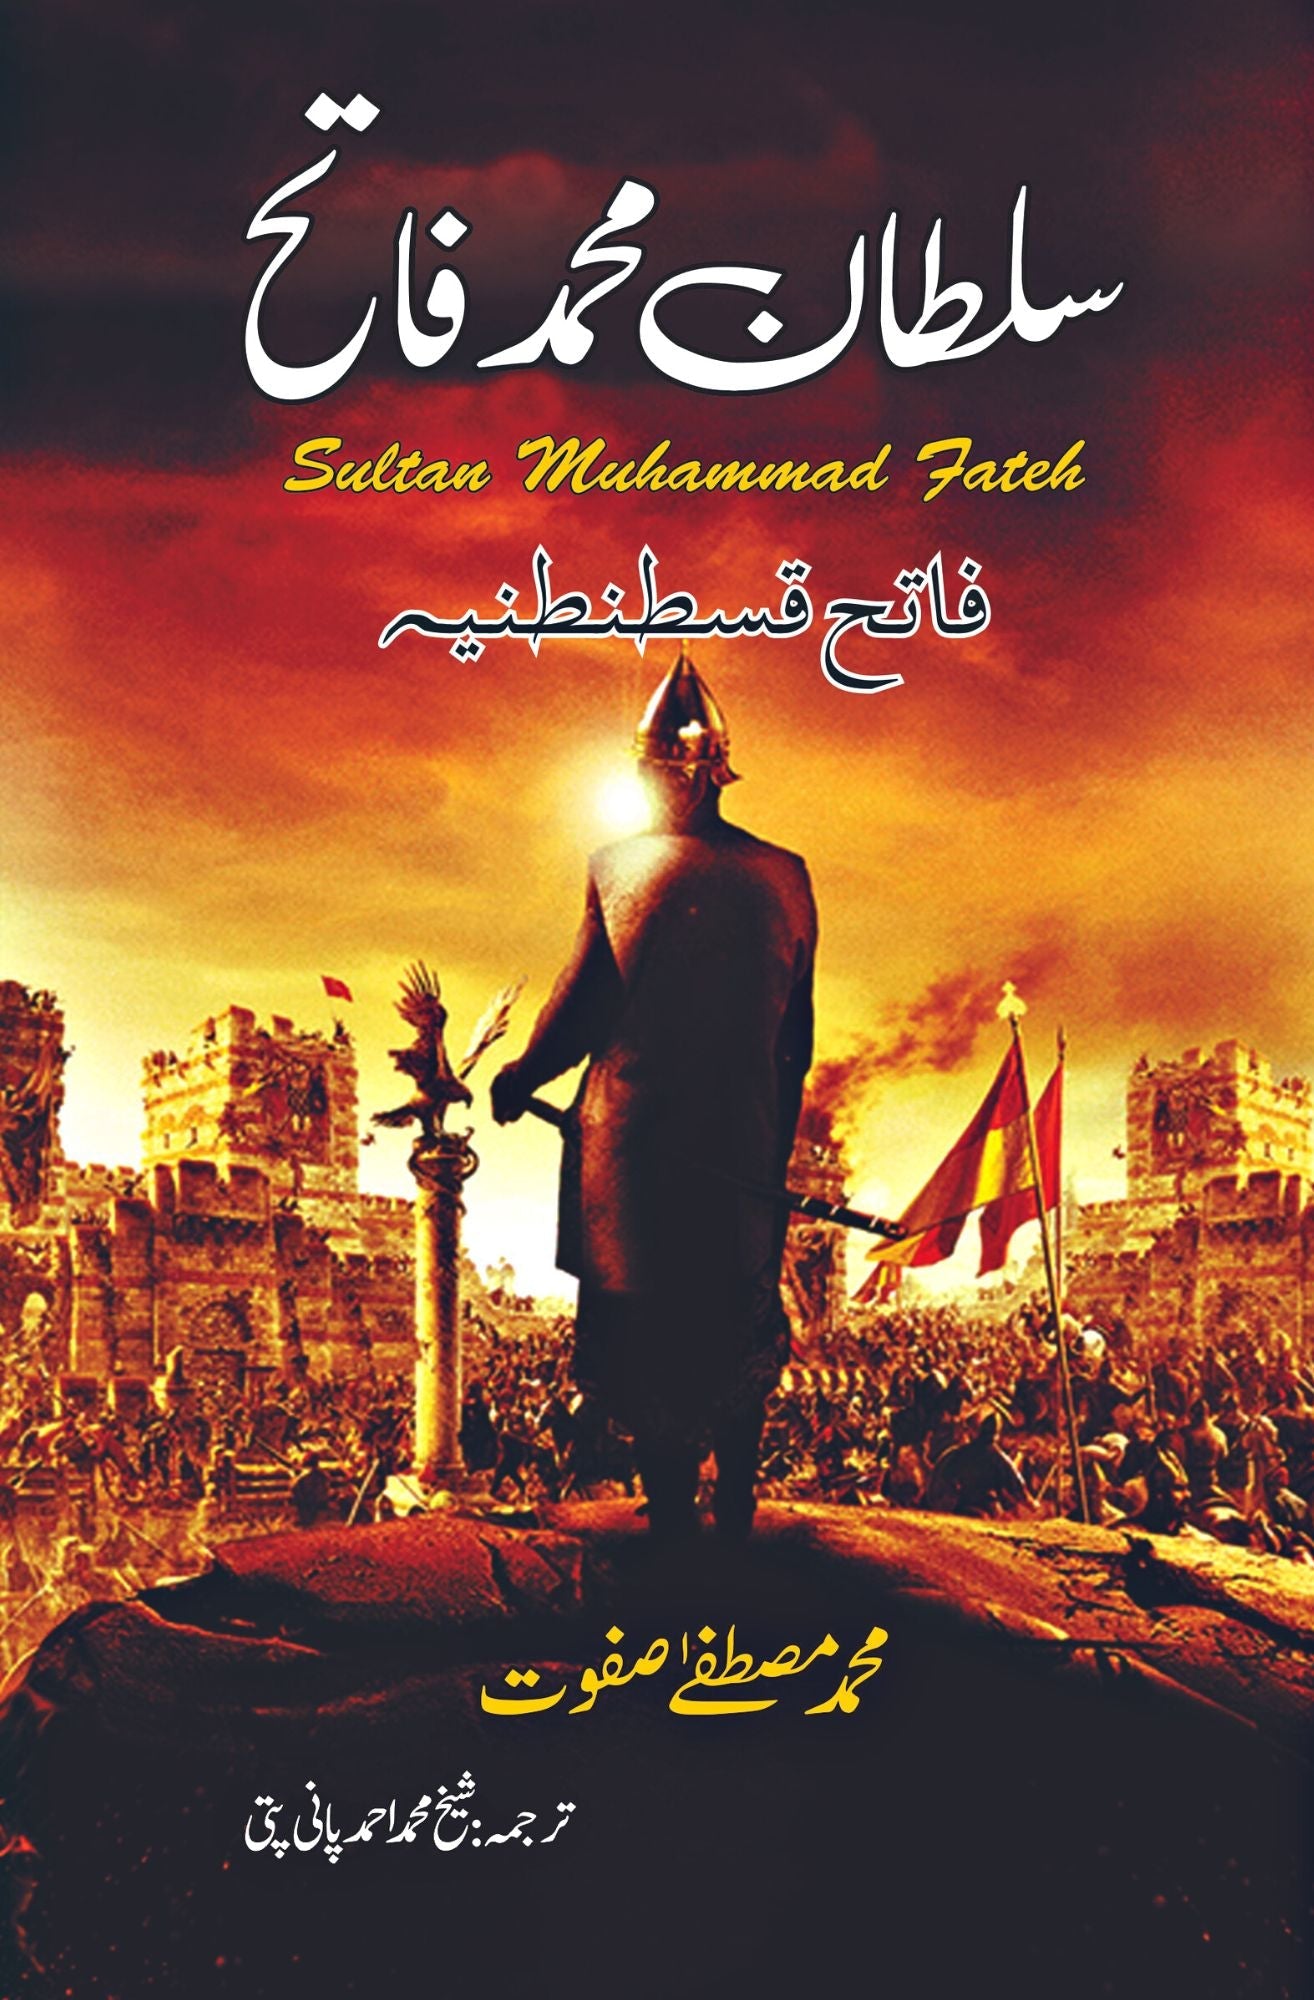 سلطان محمد فاتح | Sultan Muhammad Fateh Fiction House